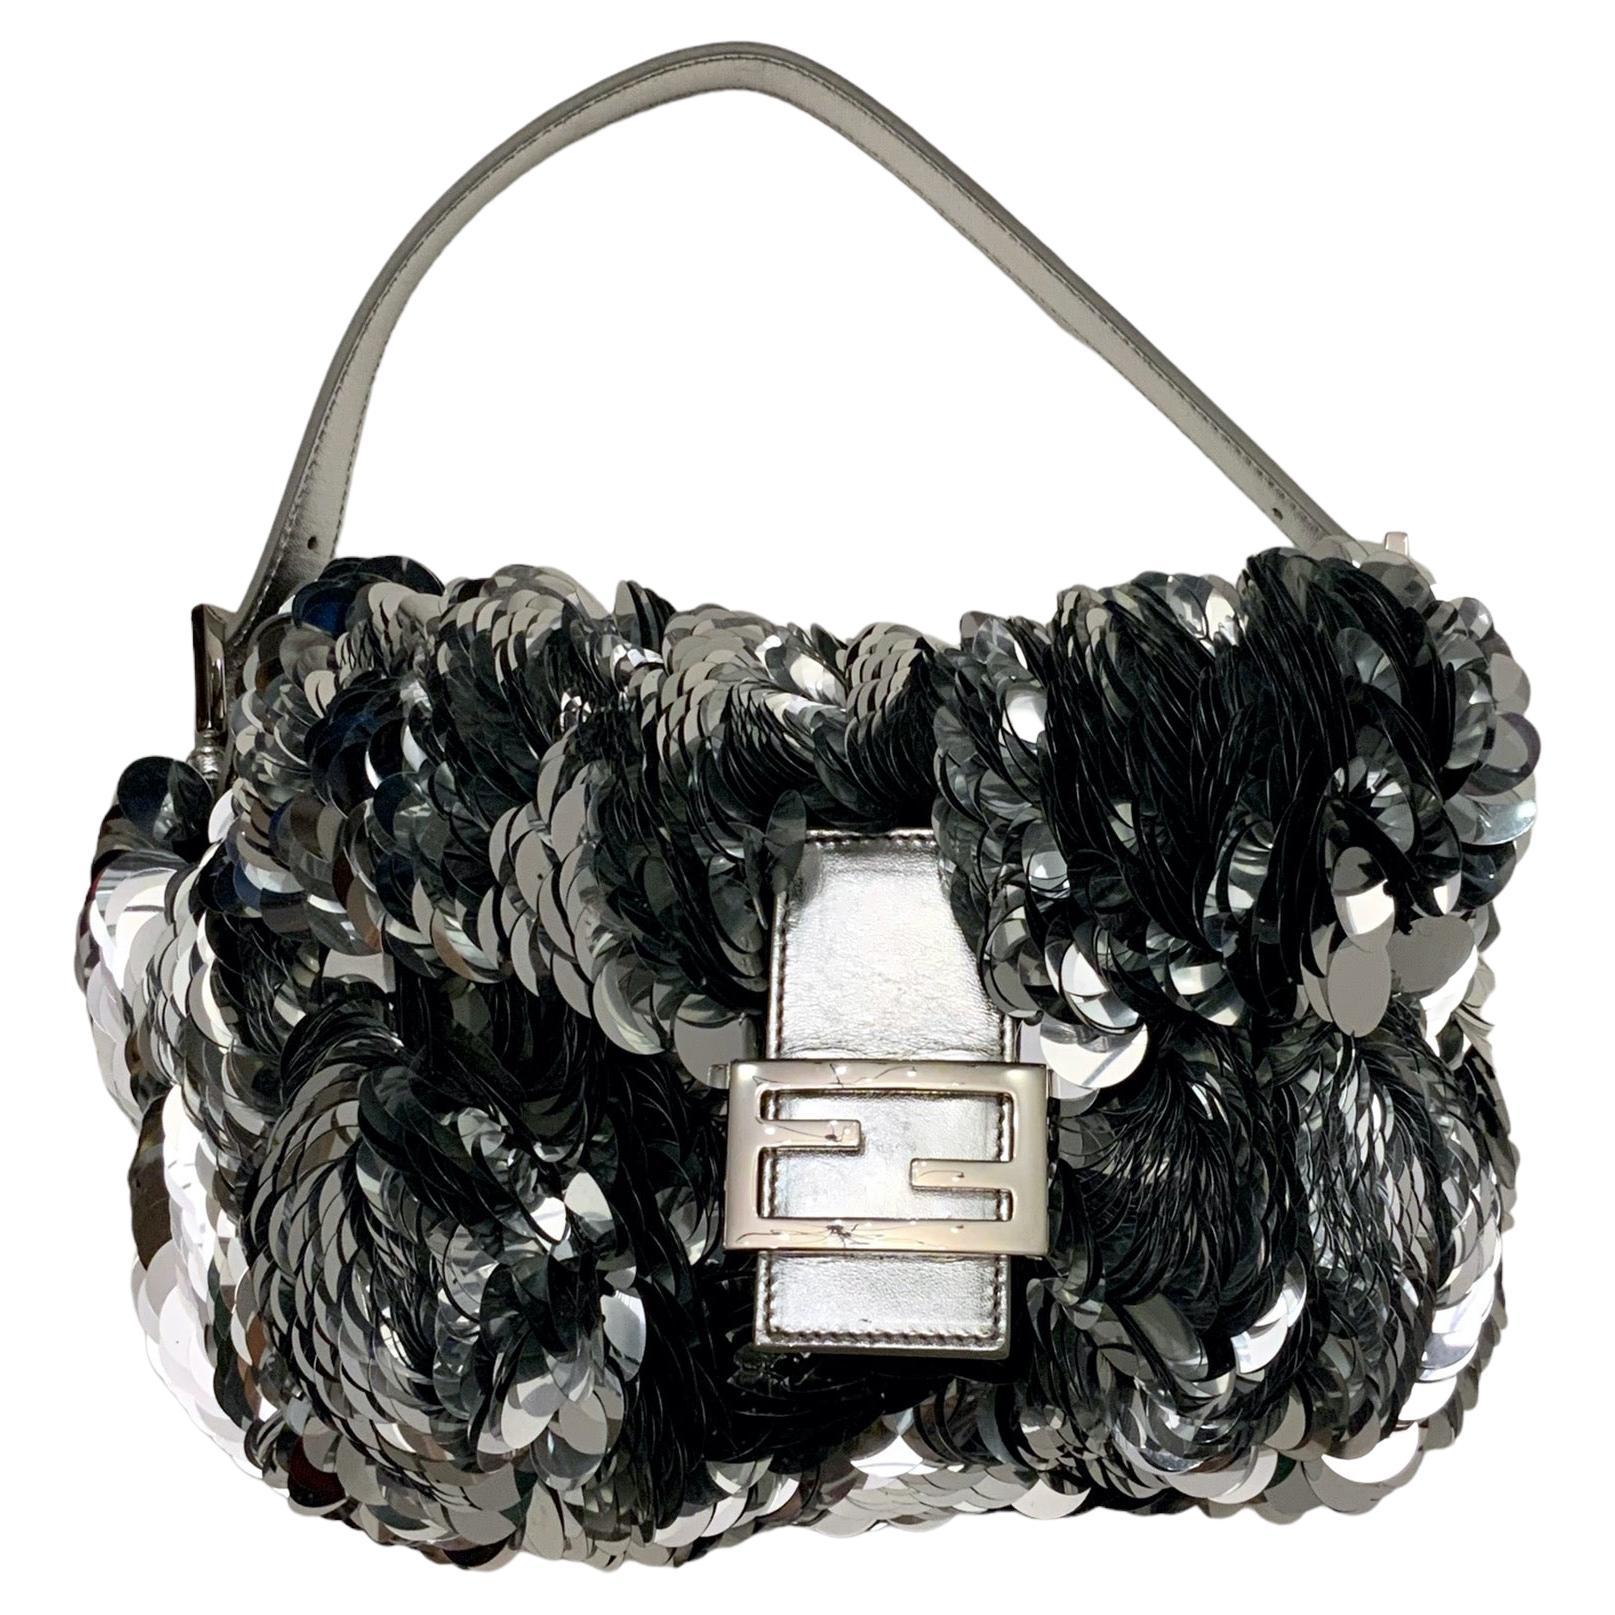 Fendi Limited Edition Silver Sequin Paillettes Leather Baguette Bag